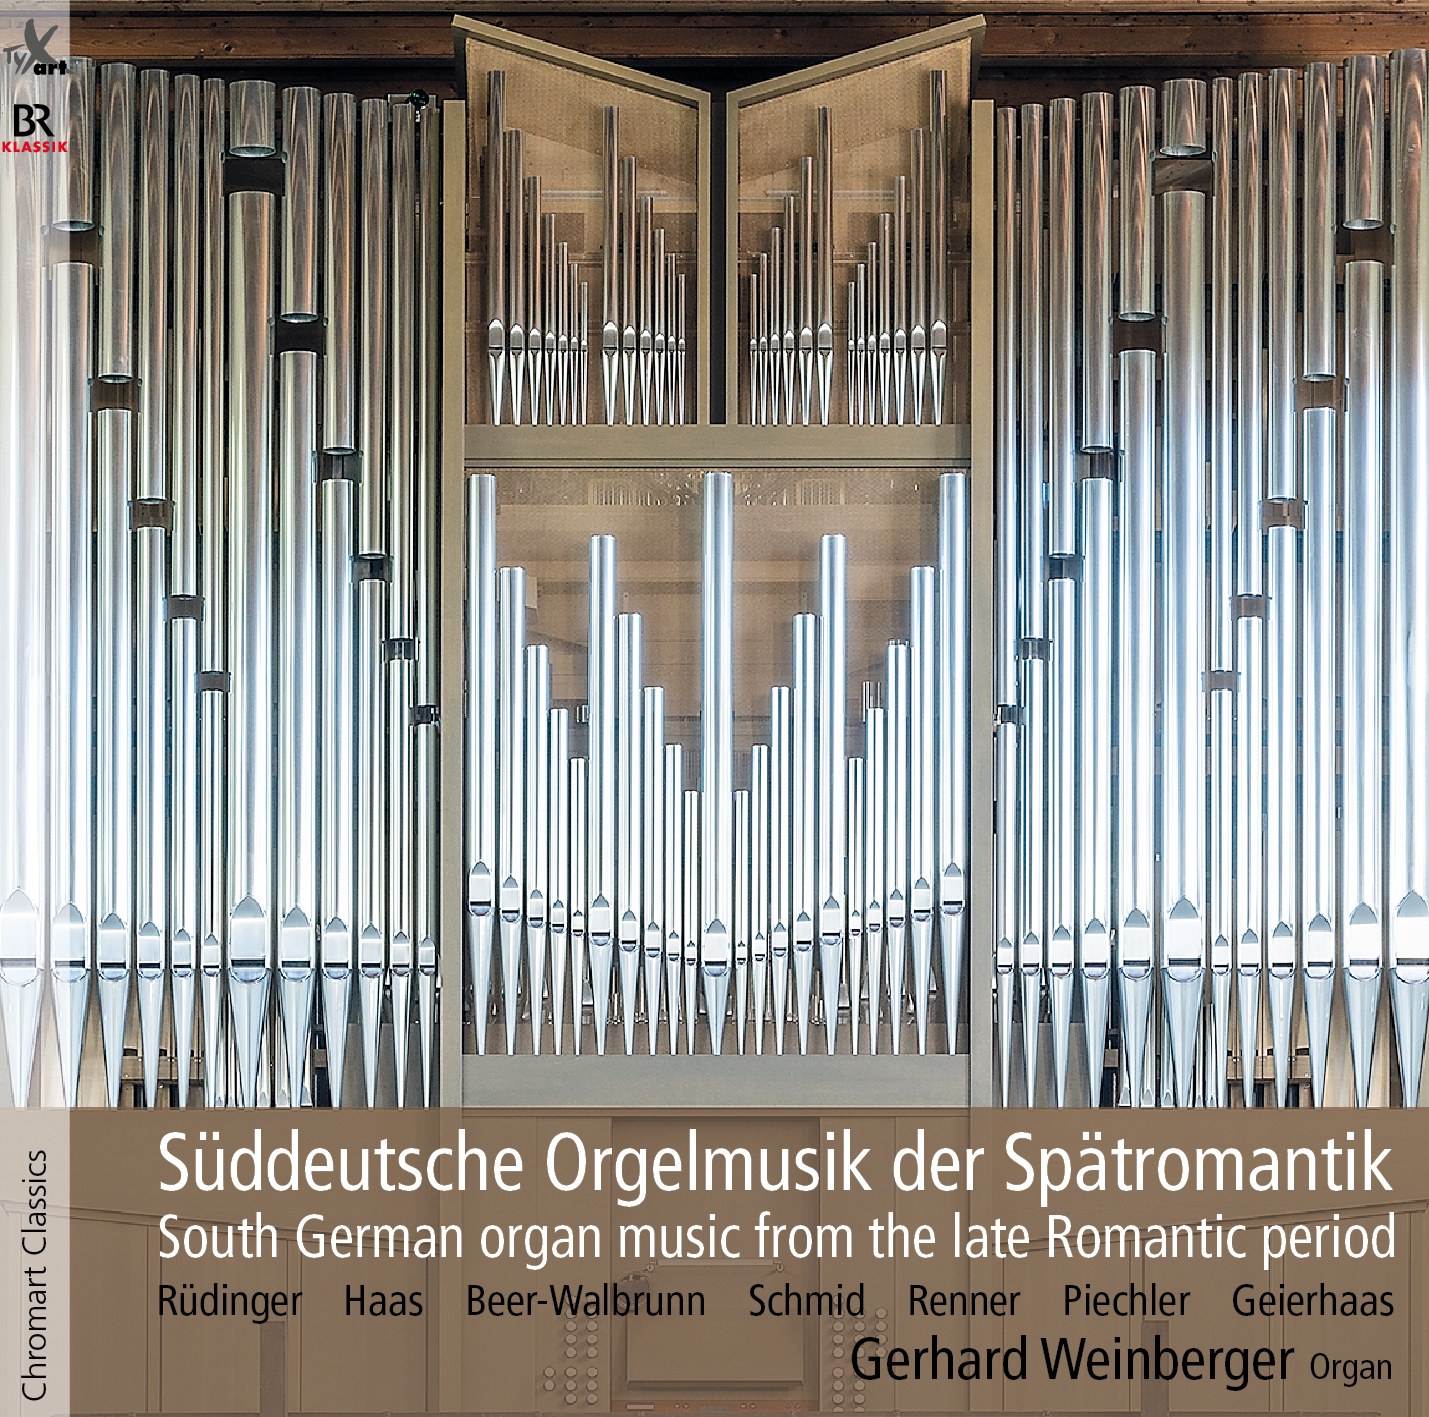 Süddeutsche Orgelmusik der Spätromantik - Gerhard Weinberger, Orgel